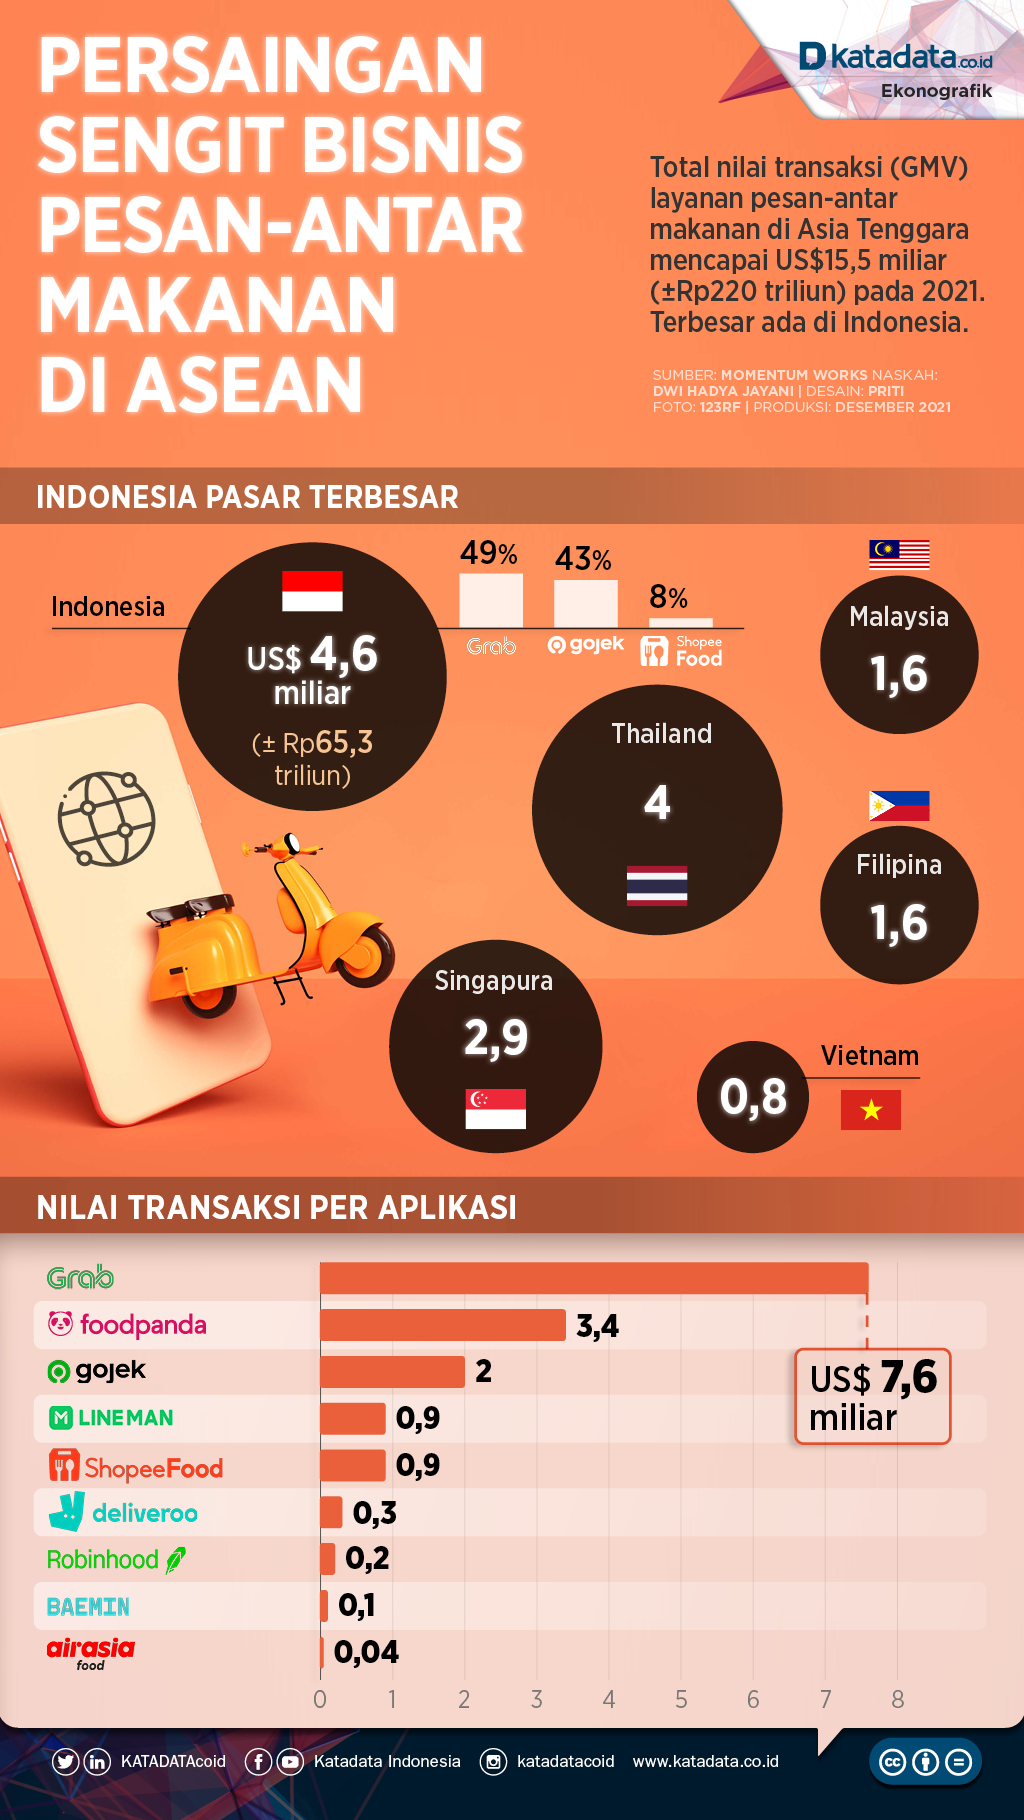 Infografik_Persaingan sengit bisnis pesan-antar makanan di asean